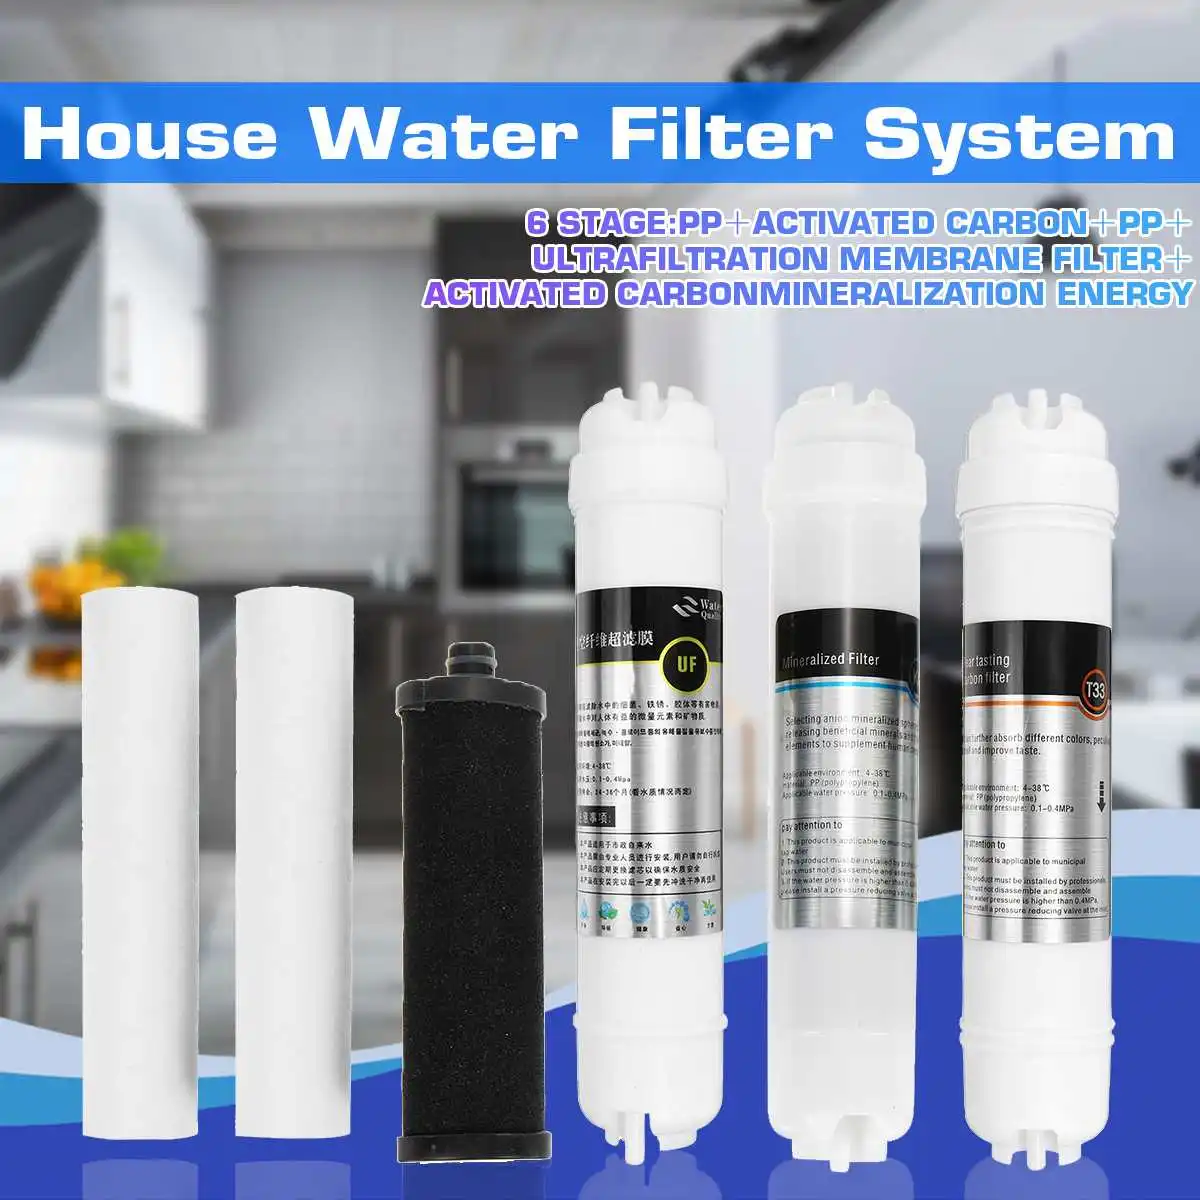 

6-ступенчатая система фильтрации воды UF, сменный кухонный домашний очиститель, фильтры для воды, картридж, фильтр для фильтрации воды, очист...